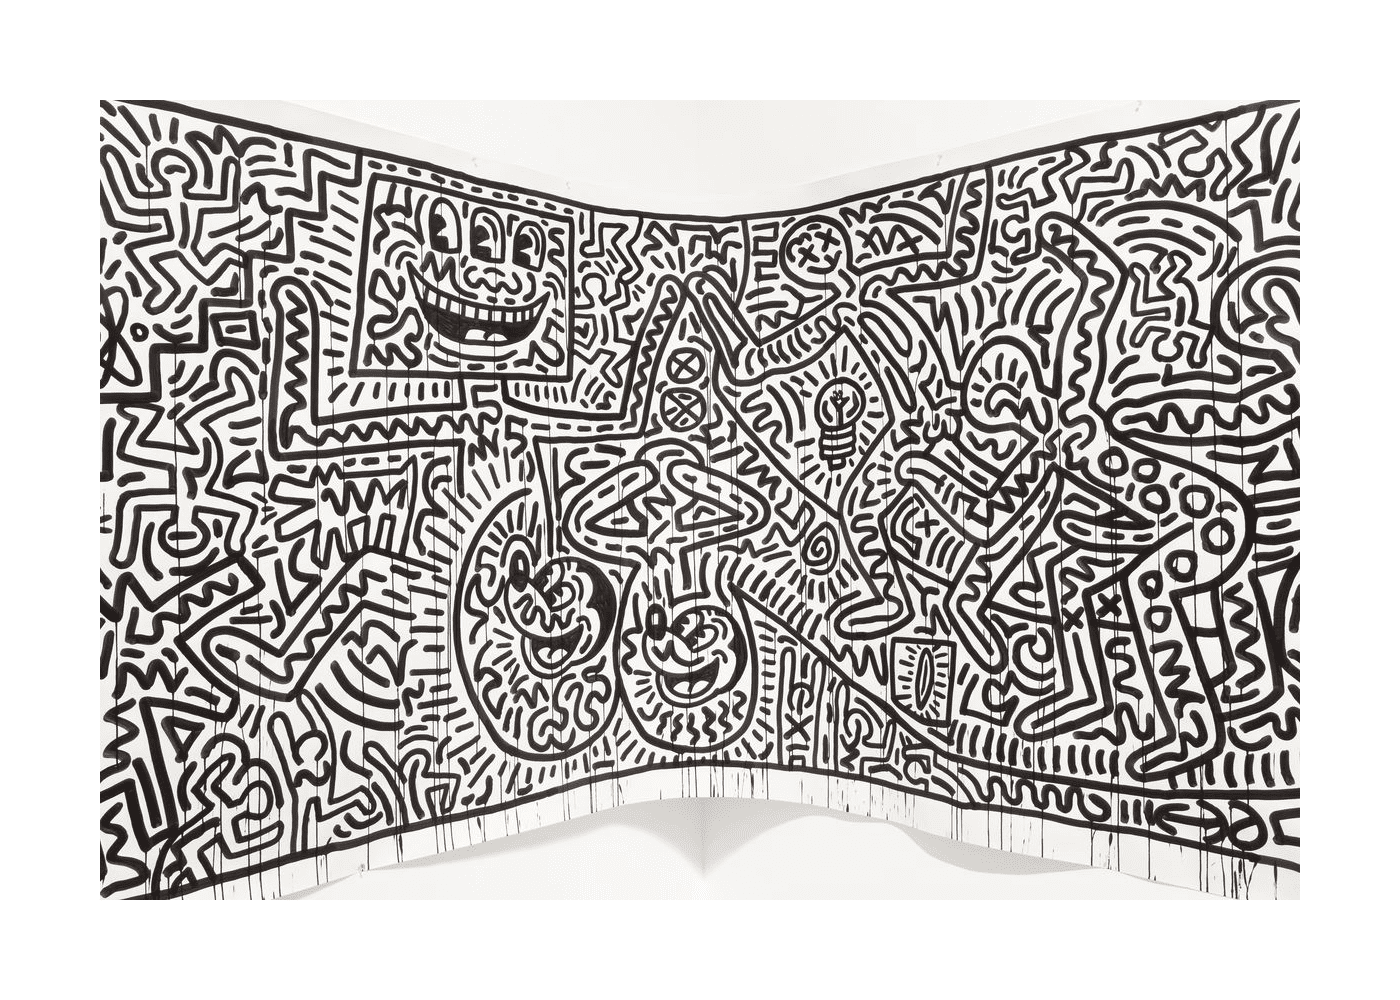  ein Fresko von Keith Haring 